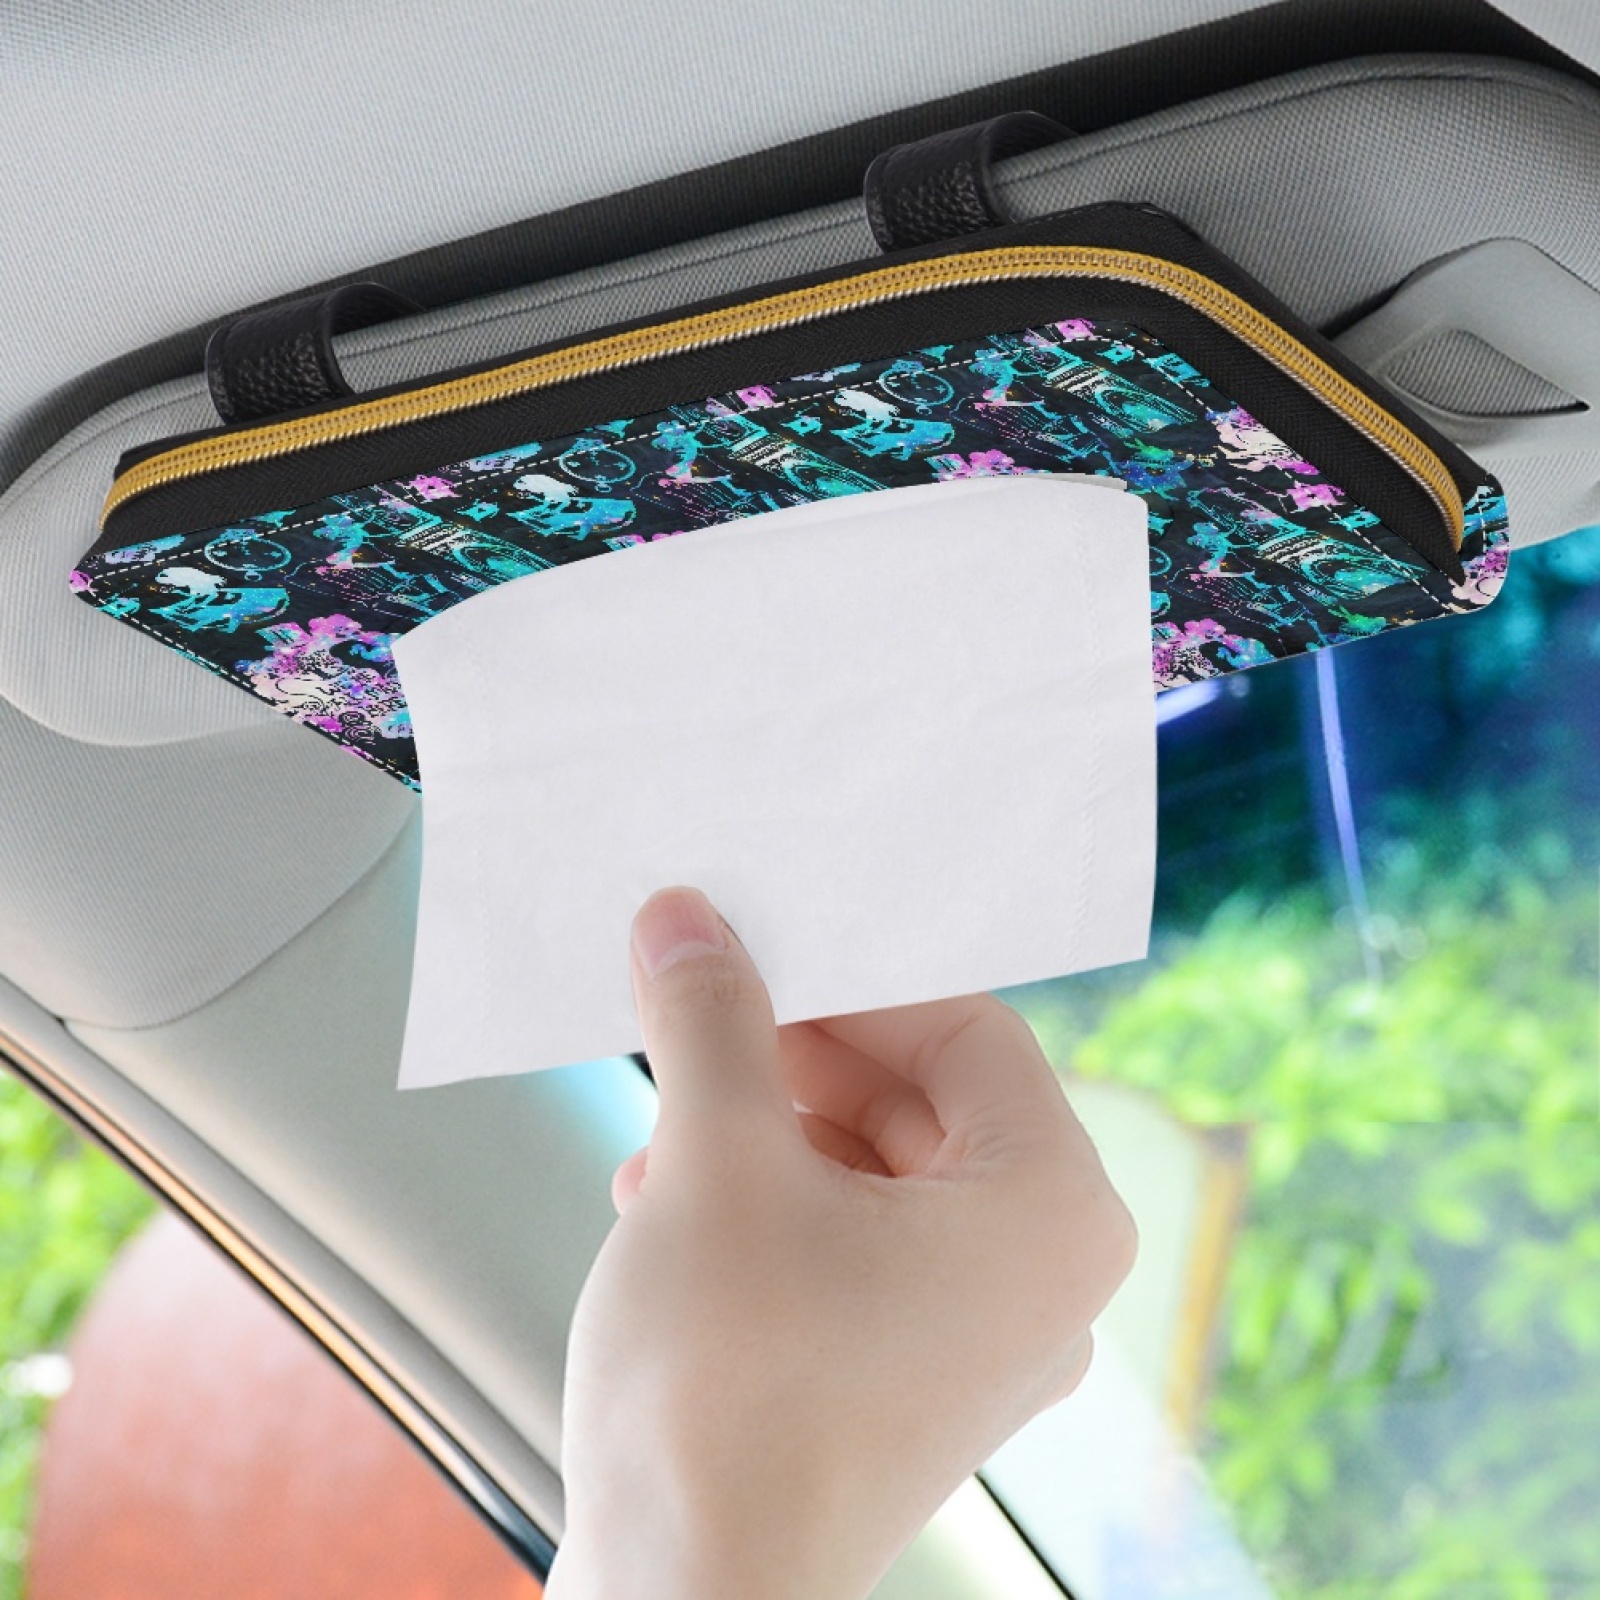 Car visor tissue box